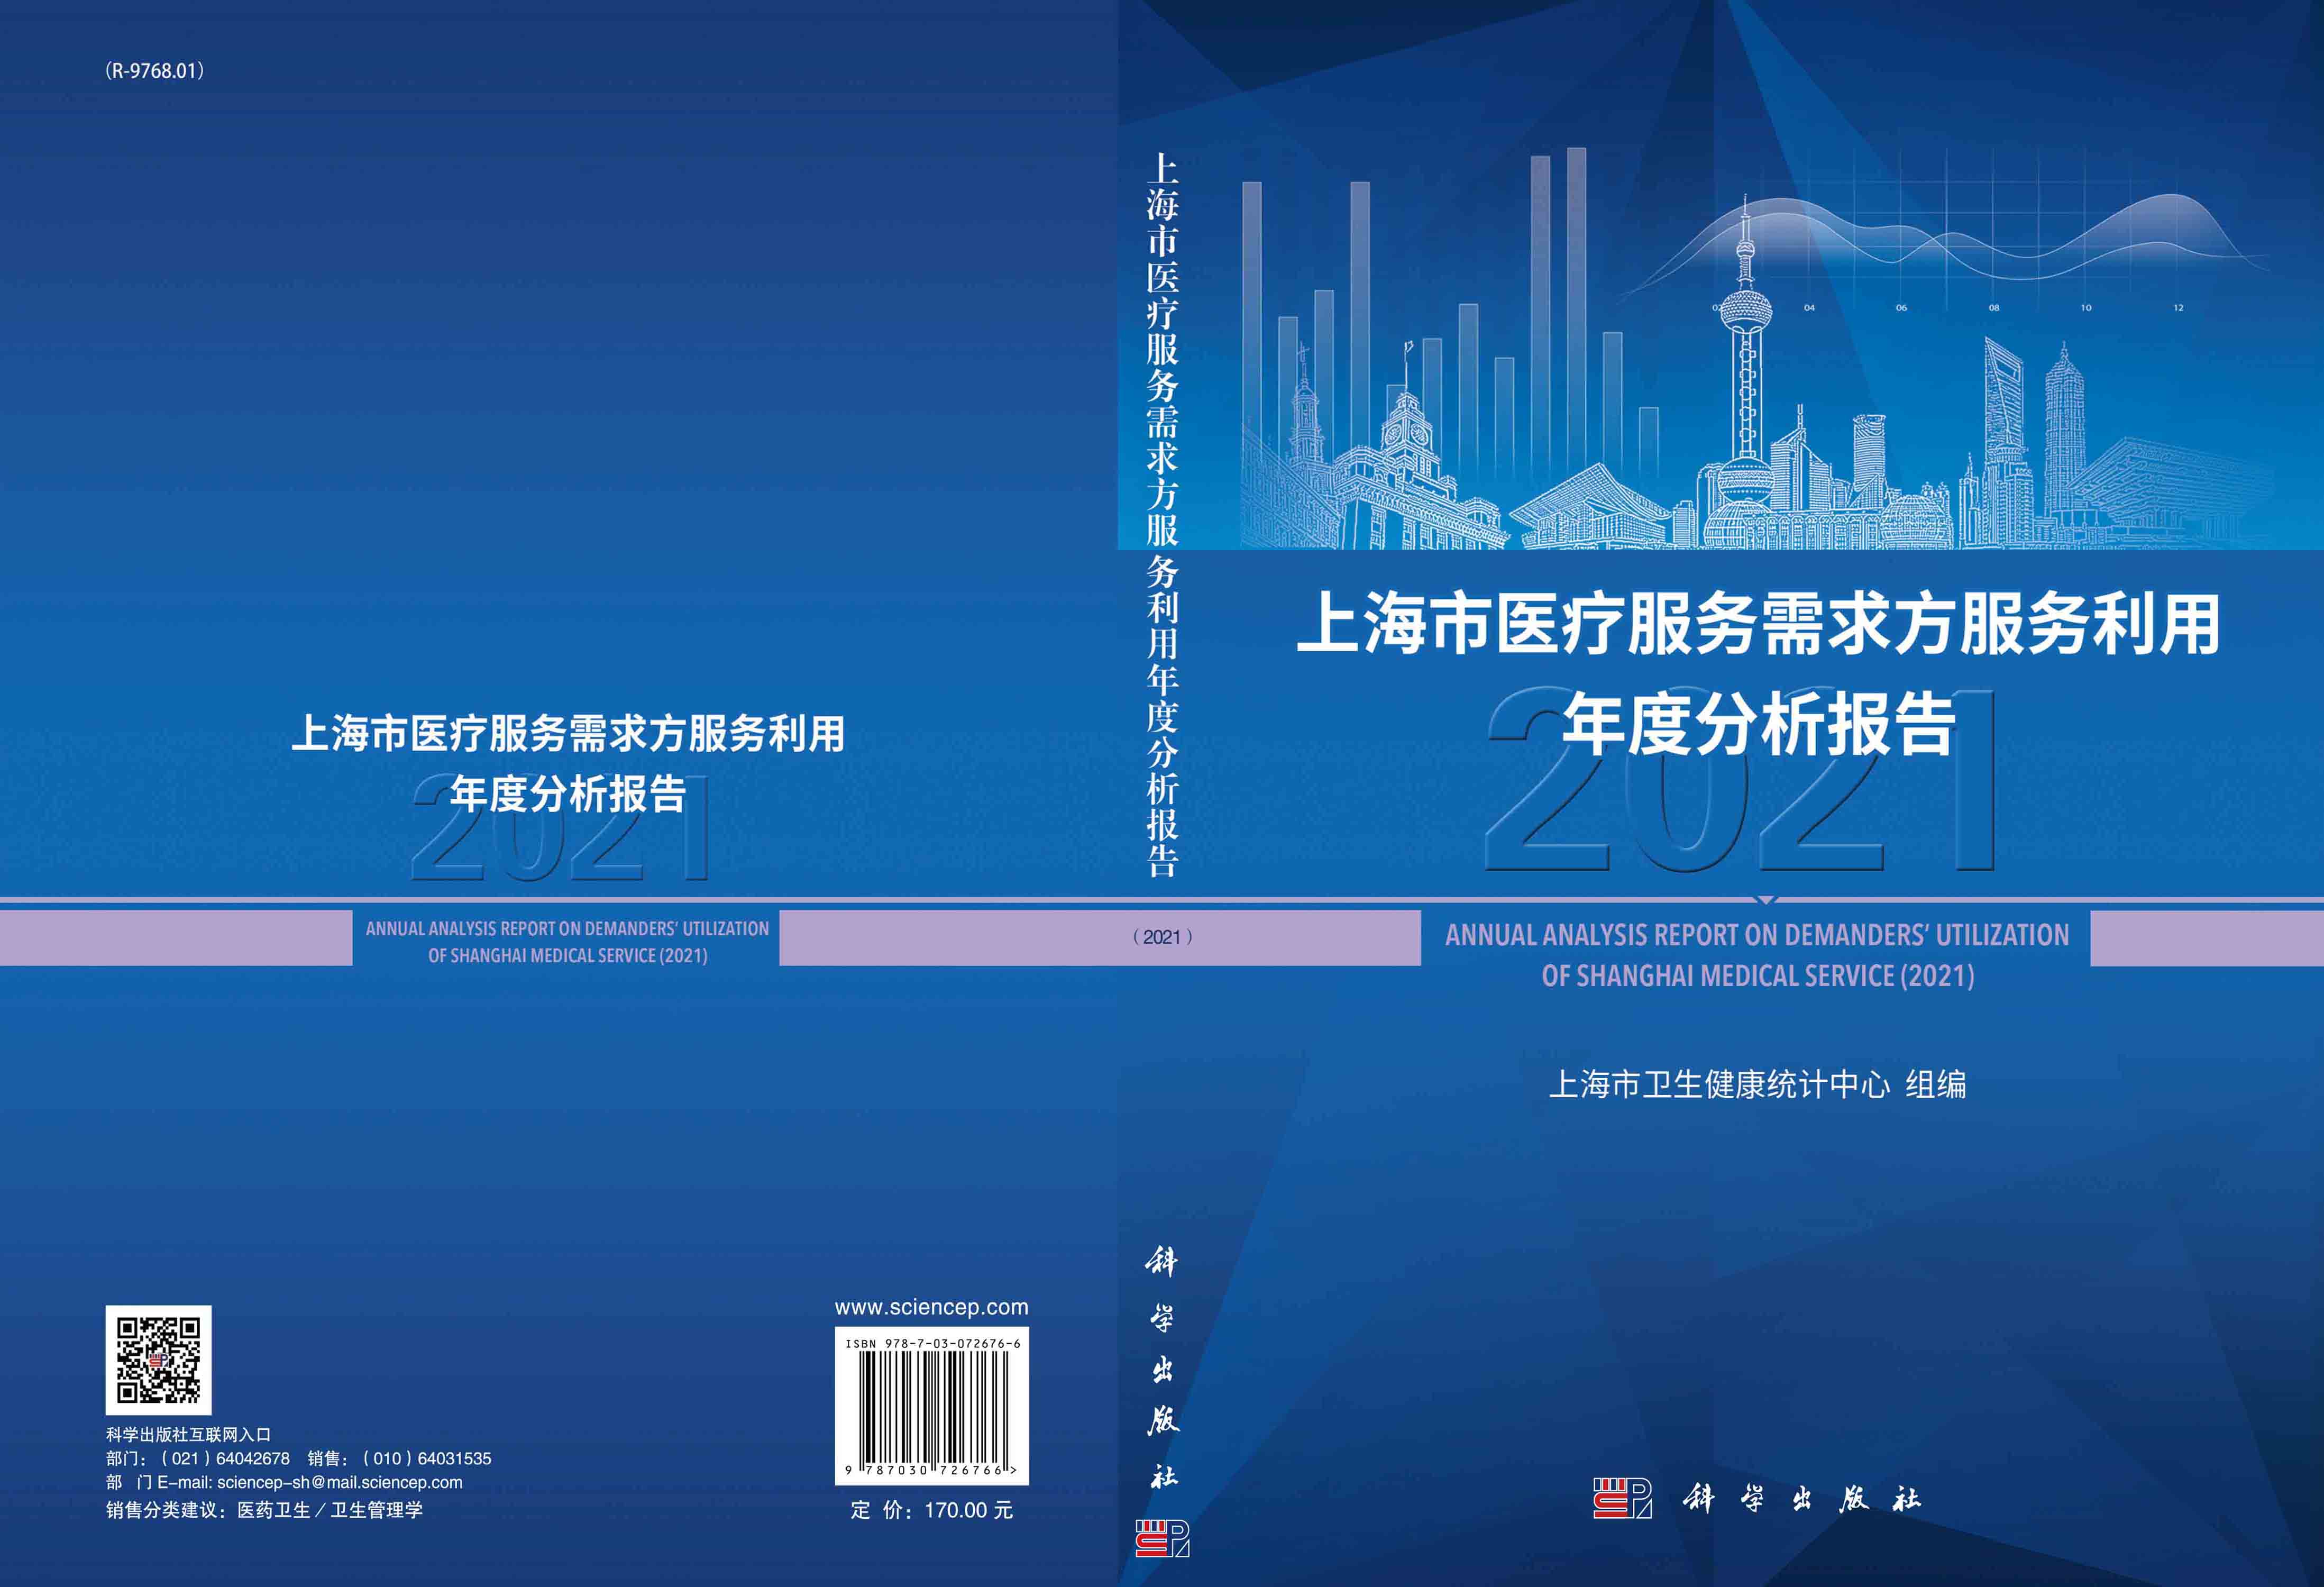 上海市医疗服务需求方服务利用年度分析报告.2021